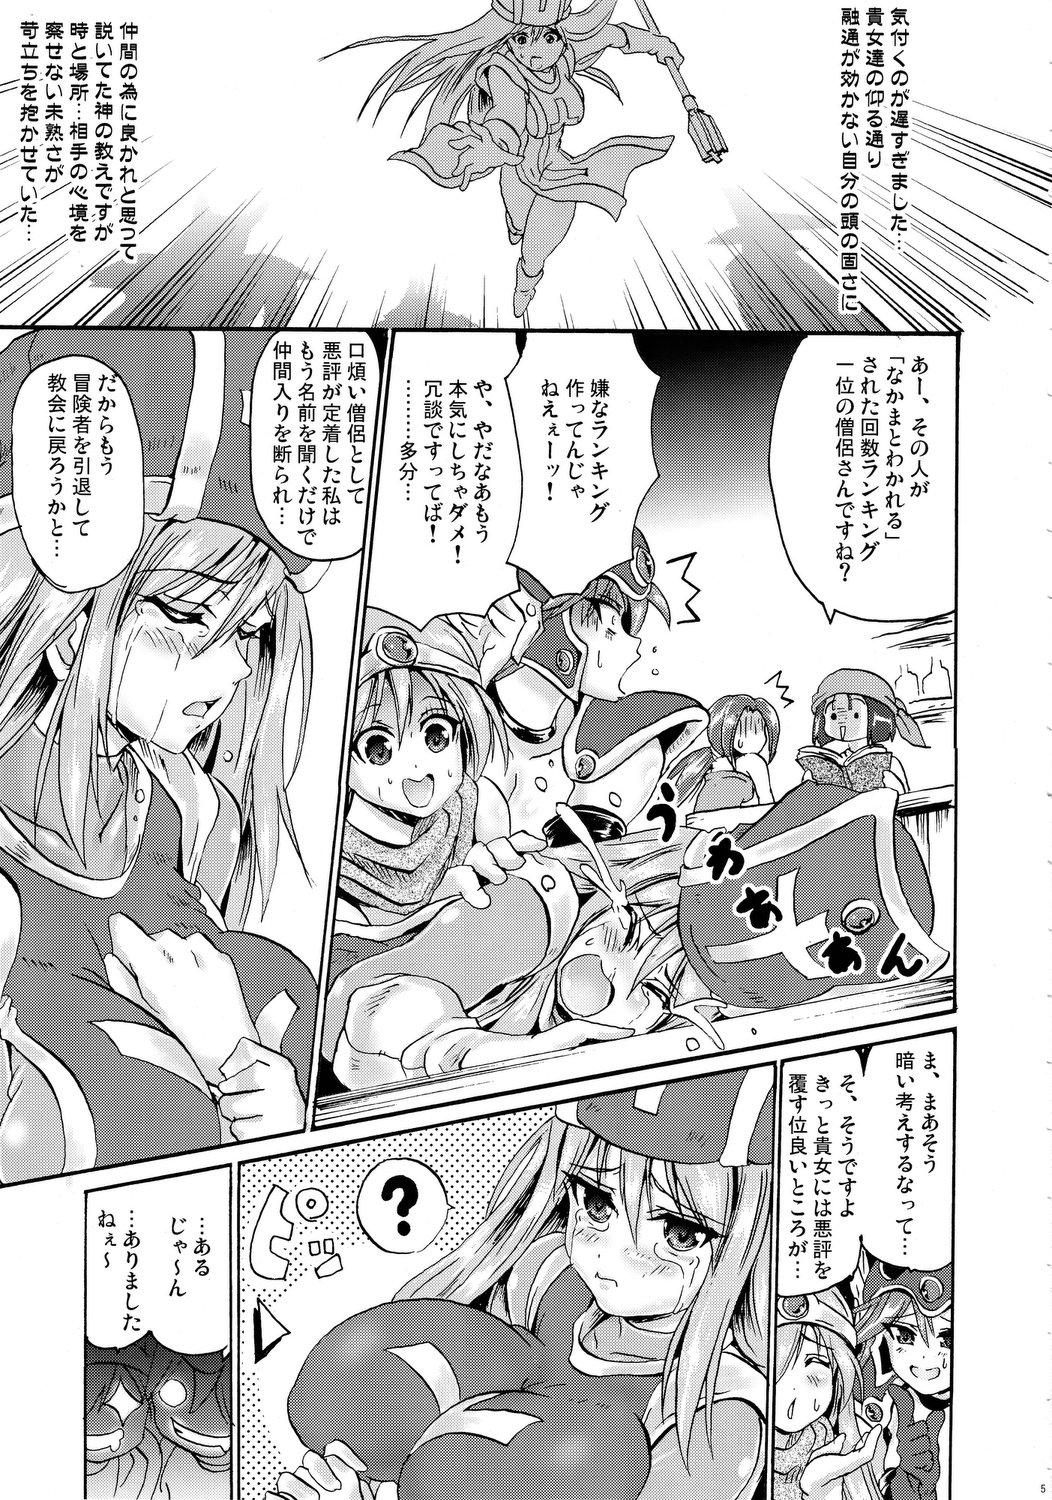 Bikini Sasou Odori - Dragon quest iii Parody - Page 4